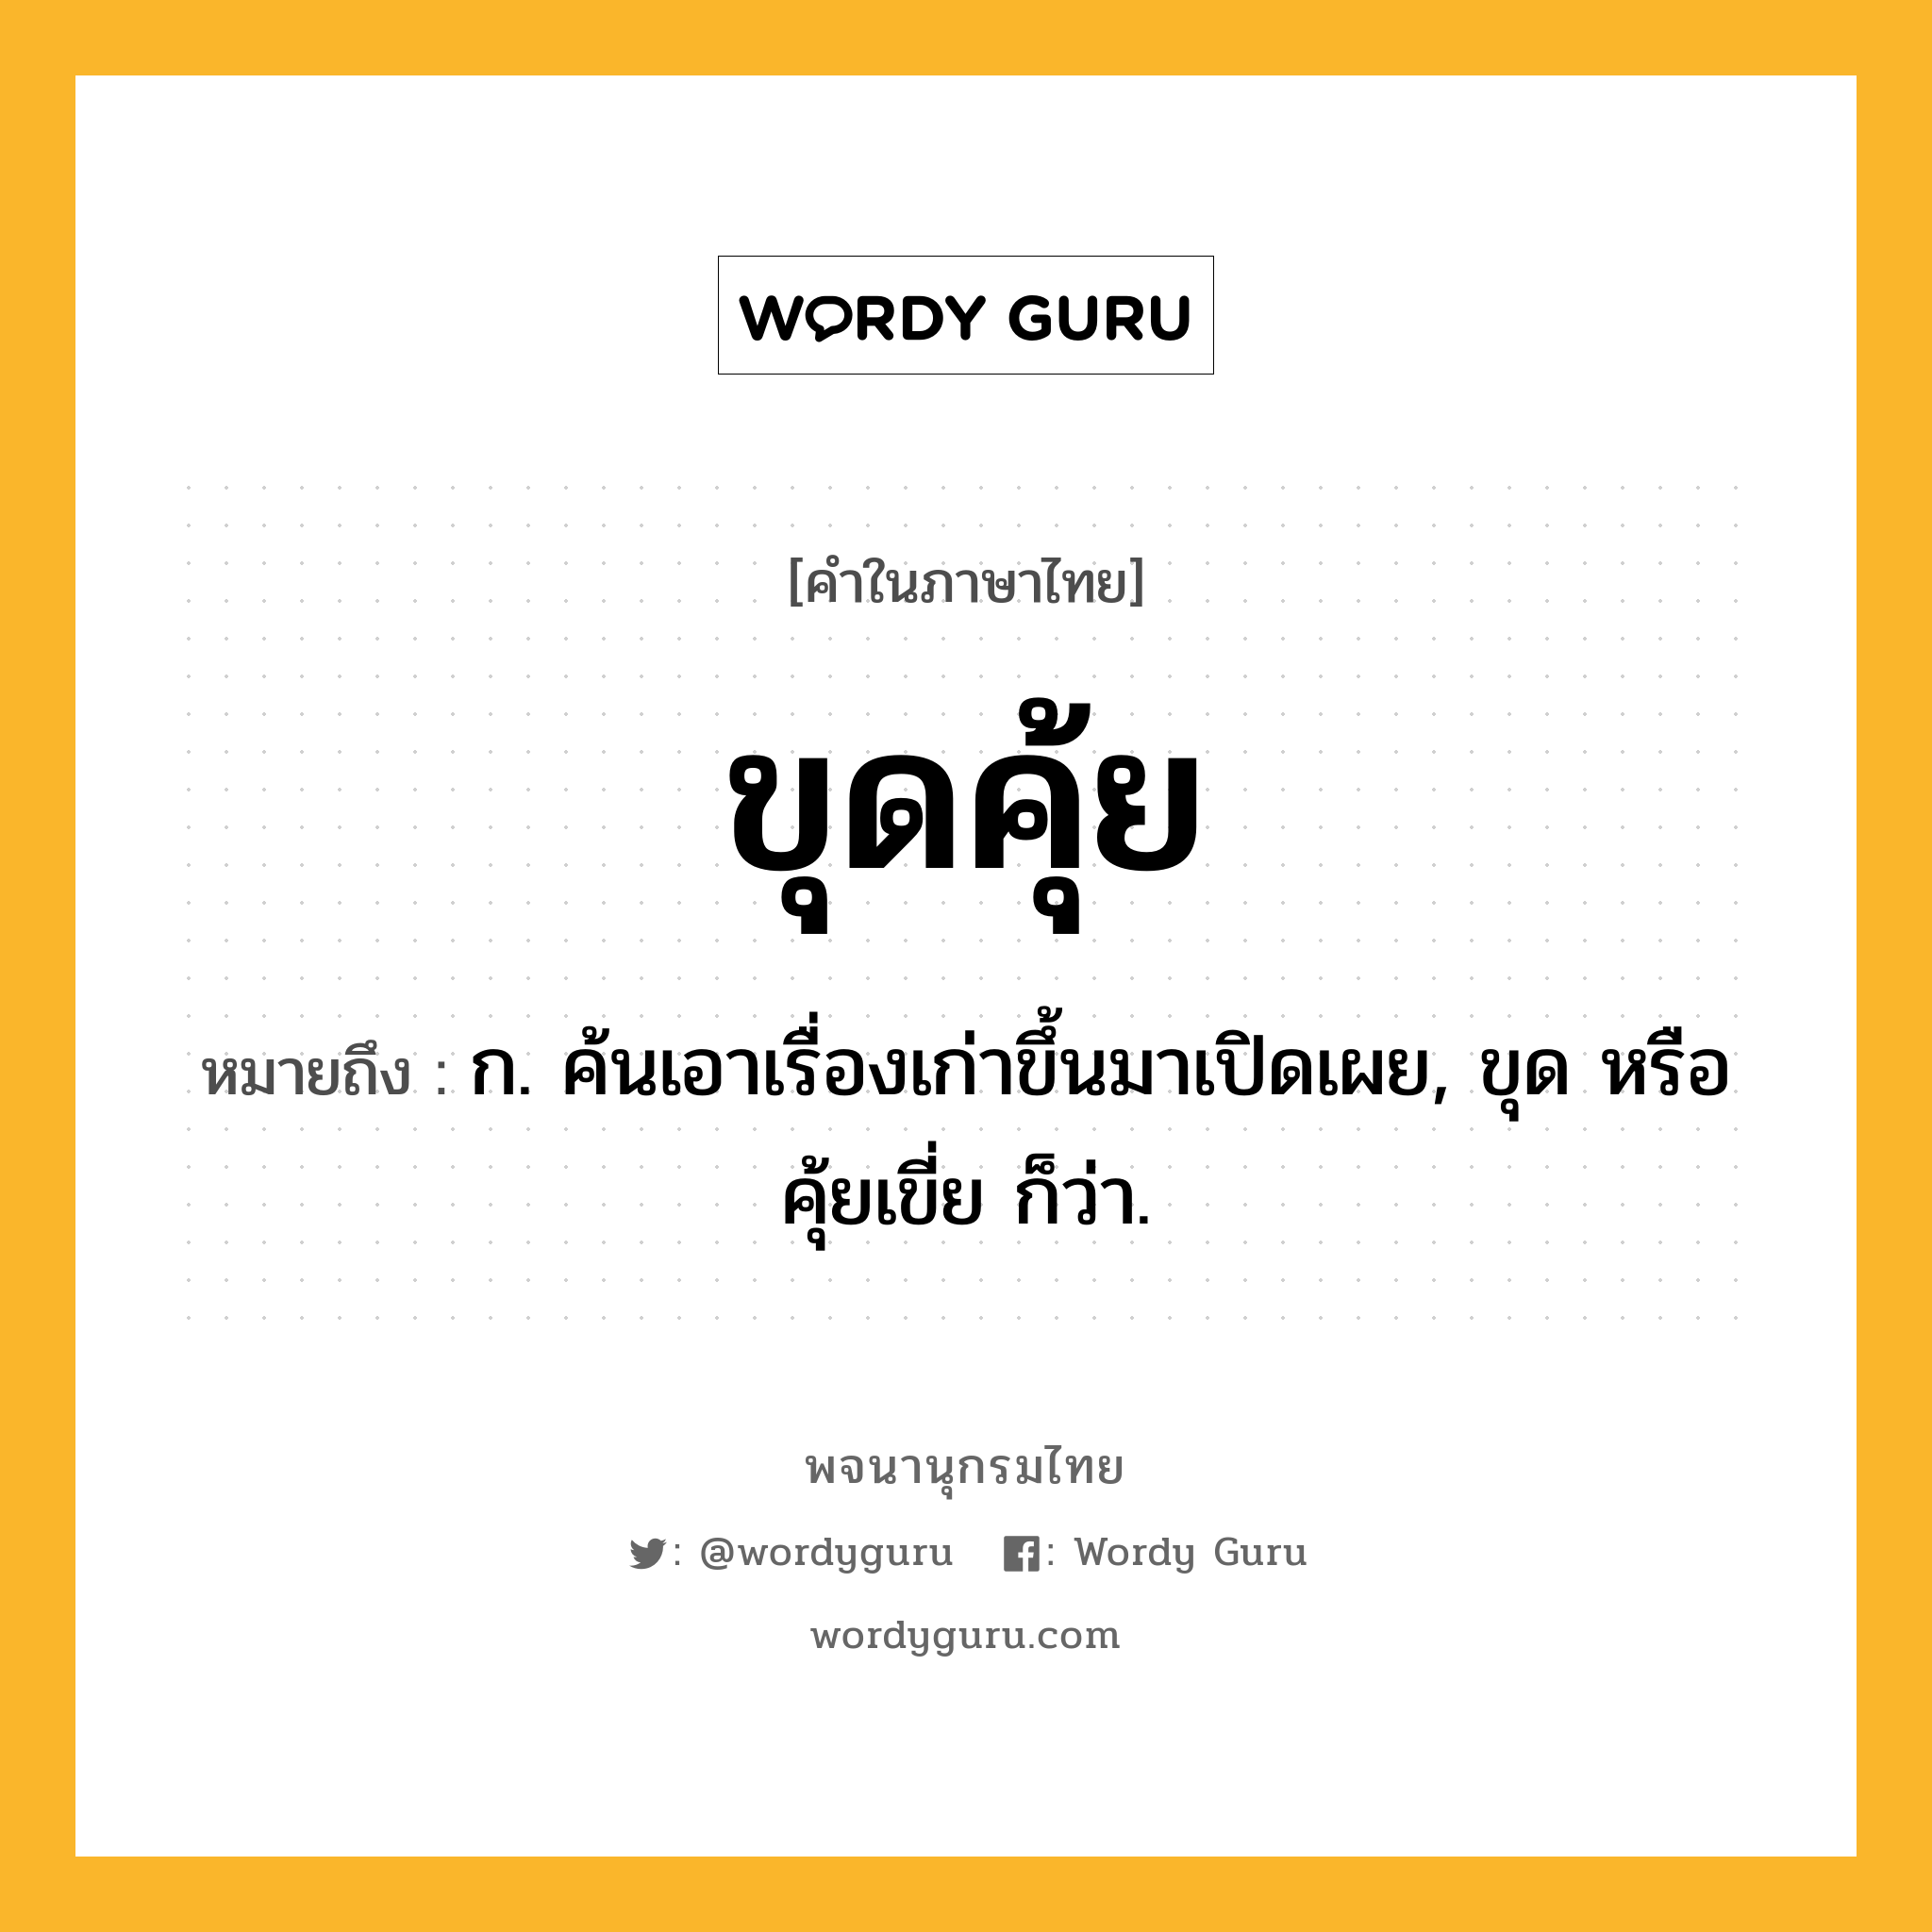 ขุดคุ้ย หมายถึงอะไร?, คำในภาษาไทย ขุดคุ้ย หมายถึง ก. ค้นเอาเรื่องเก่าขึ้นมาเปิดเผย, ขุด หรือ คุ้ยเขี่ย ก็ว่า.